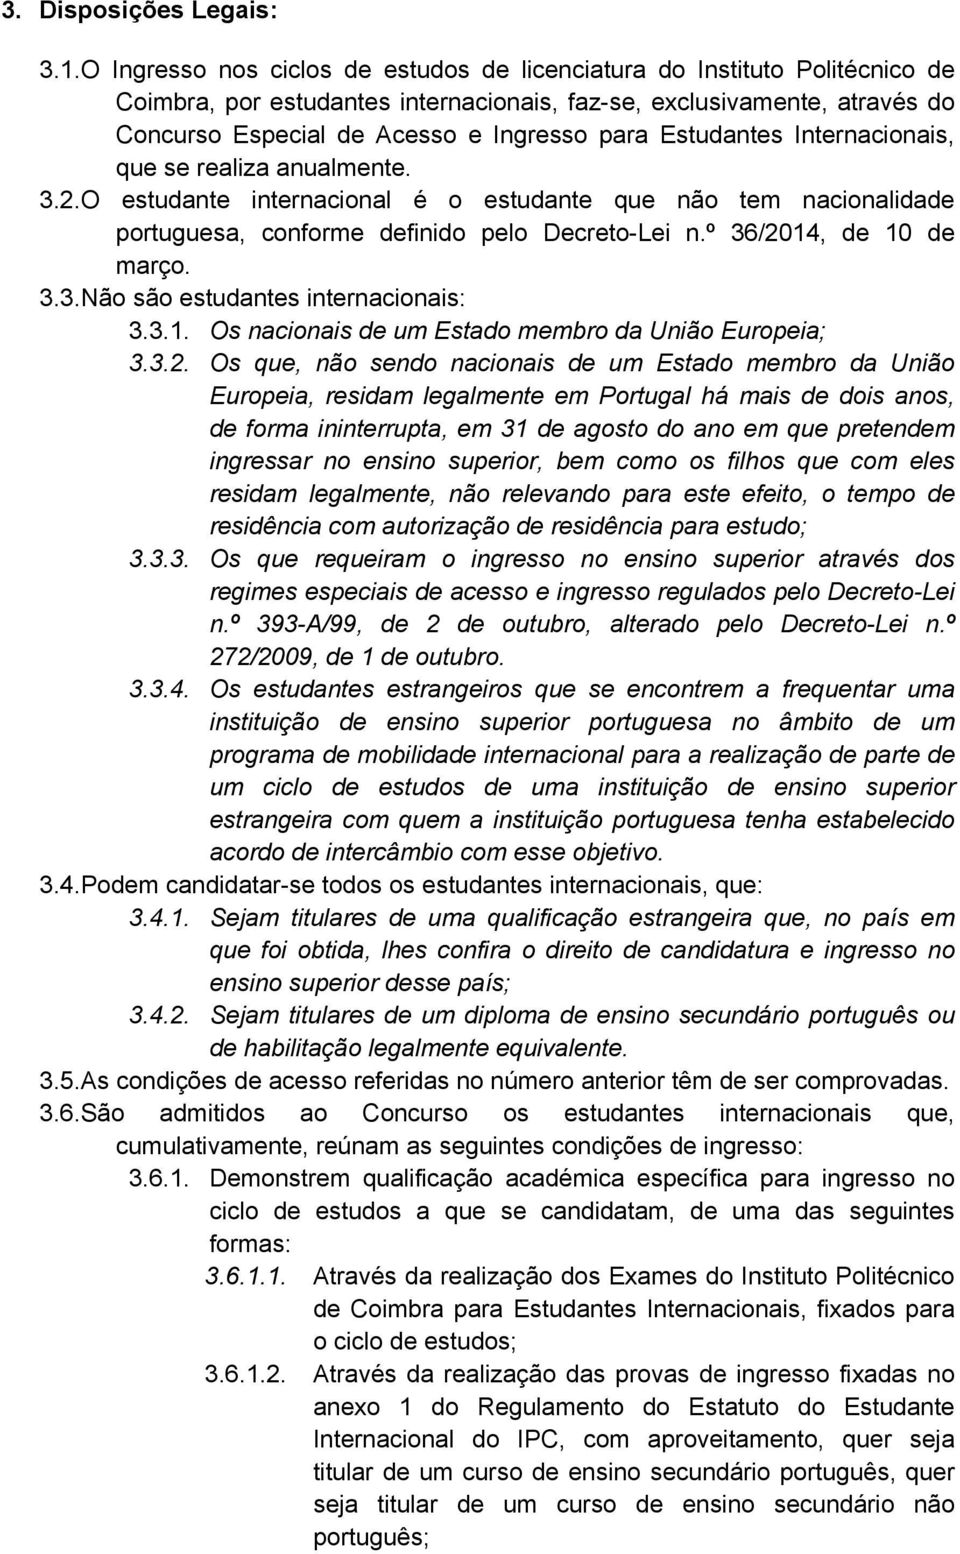 Estudantes Internacionais, que se realiza anualmente. 3.2.O estudante internacional é o estudante que não tem nacionalidade portuguesa, conforme definido pelo Decreto-Lei n.º 36/2014, de 10 de março.